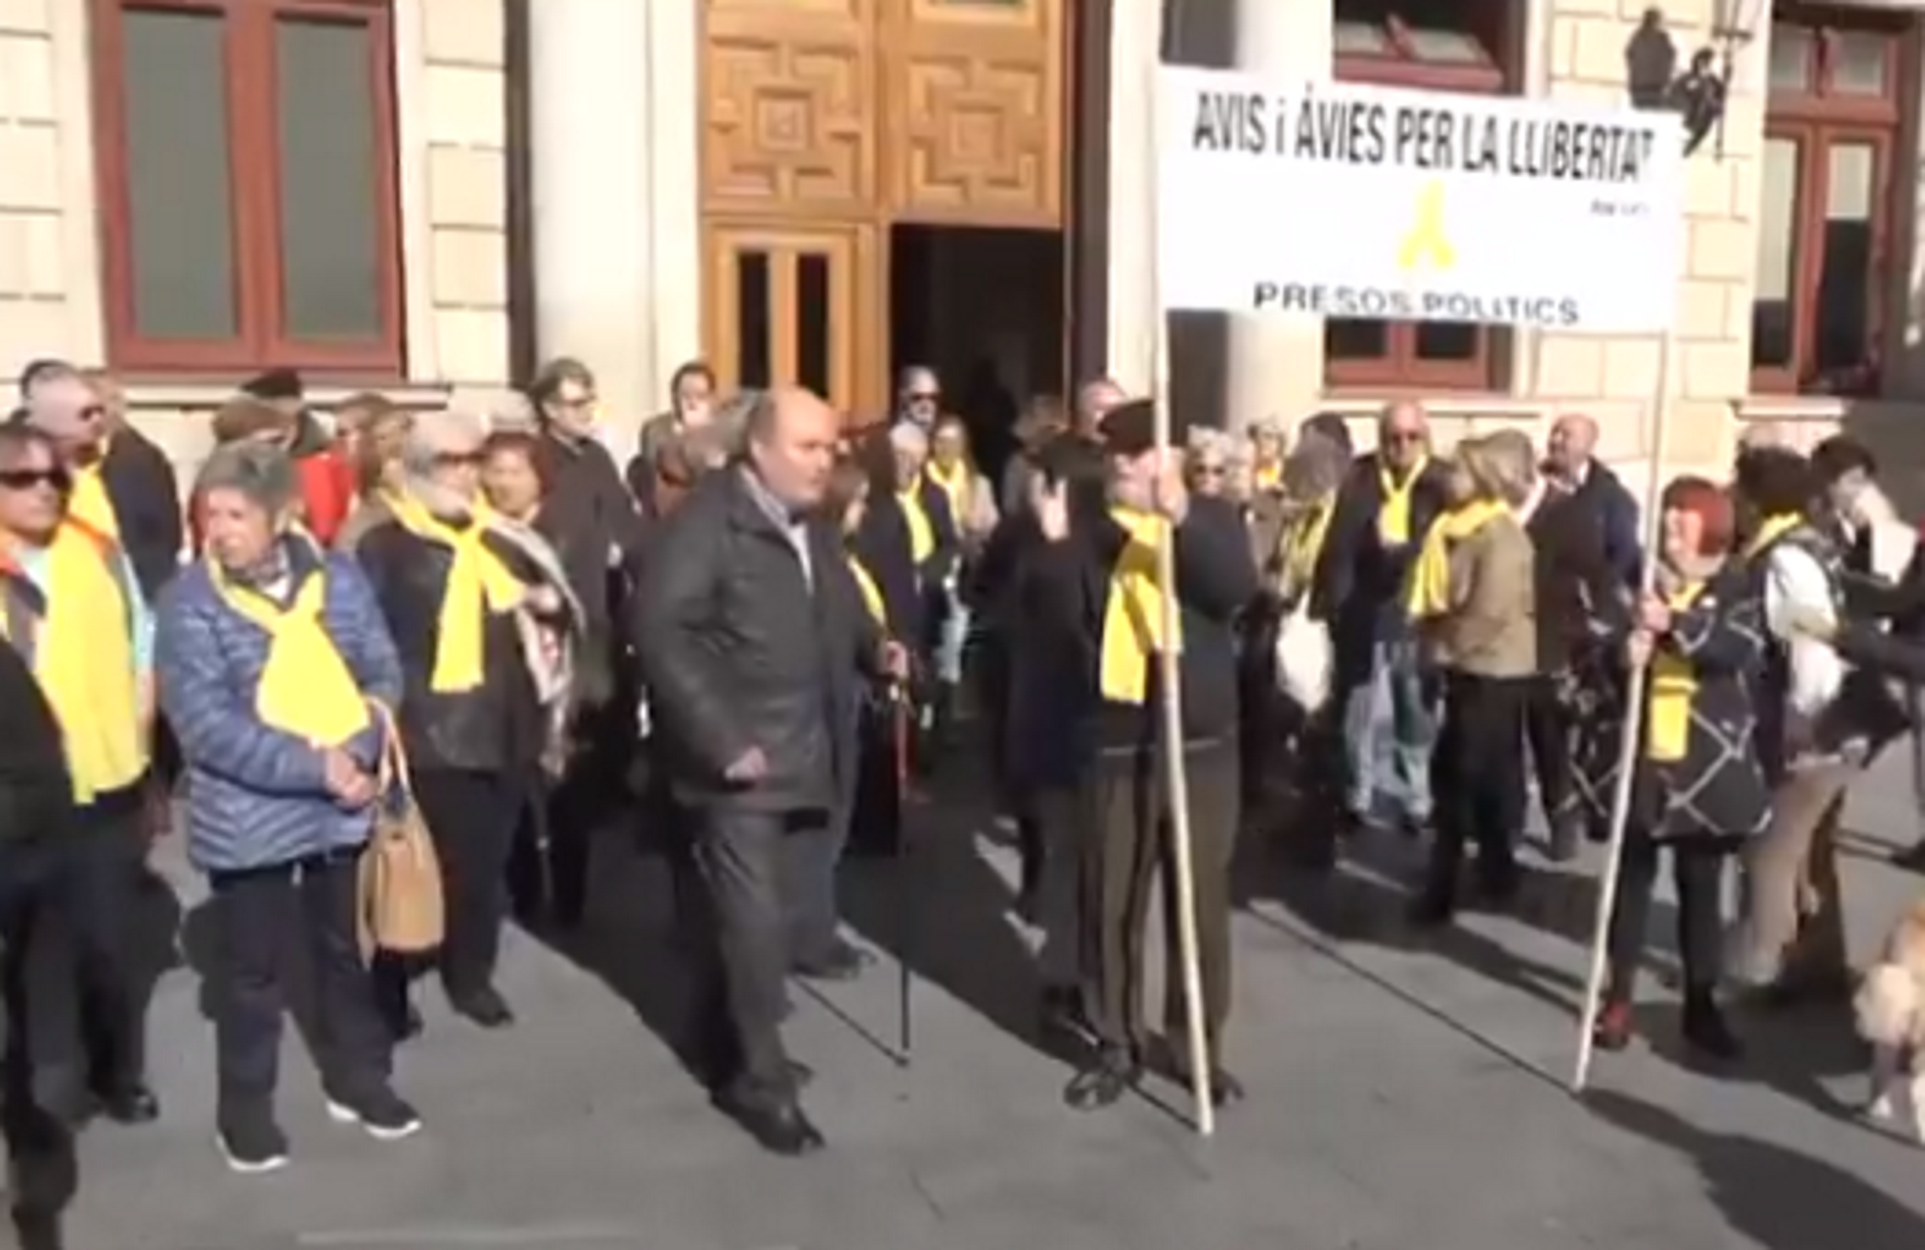 La Junta Electoral prohíbe a un grupo de abuelos manifestarse por los presos políticos